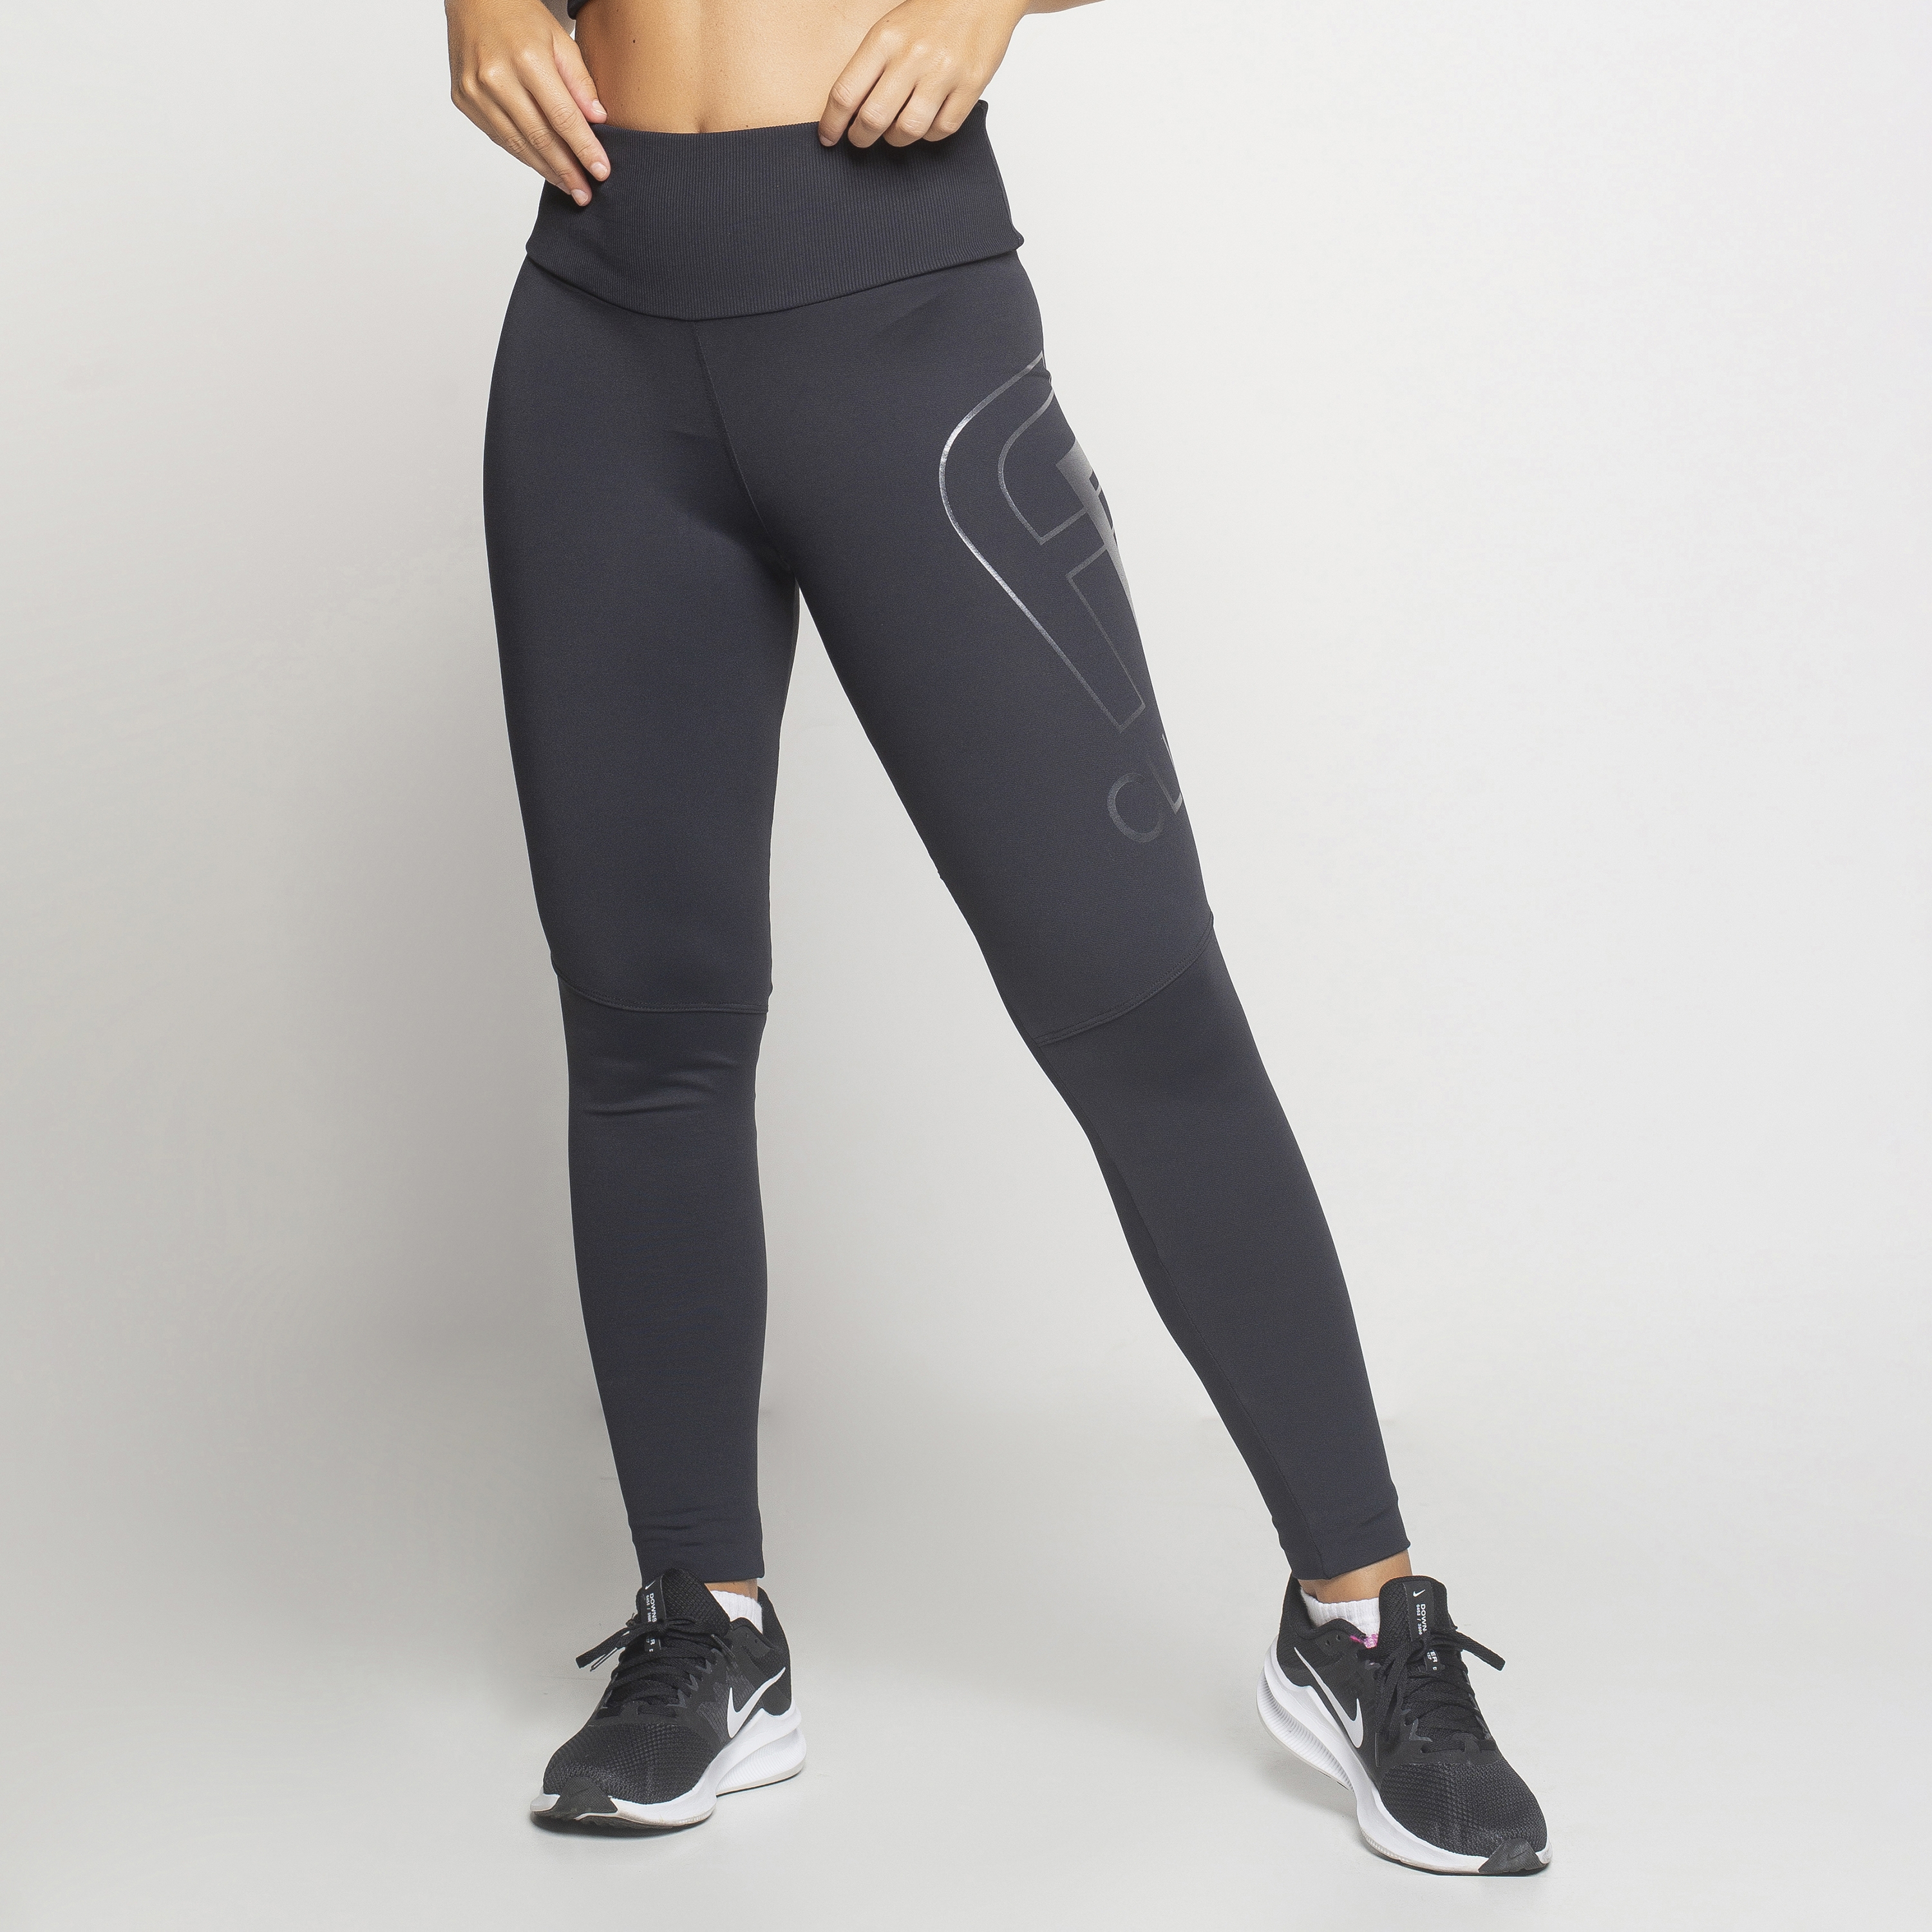 Compre Calça legging esportiva feminina com estampa digital justa para ioga  e fitness